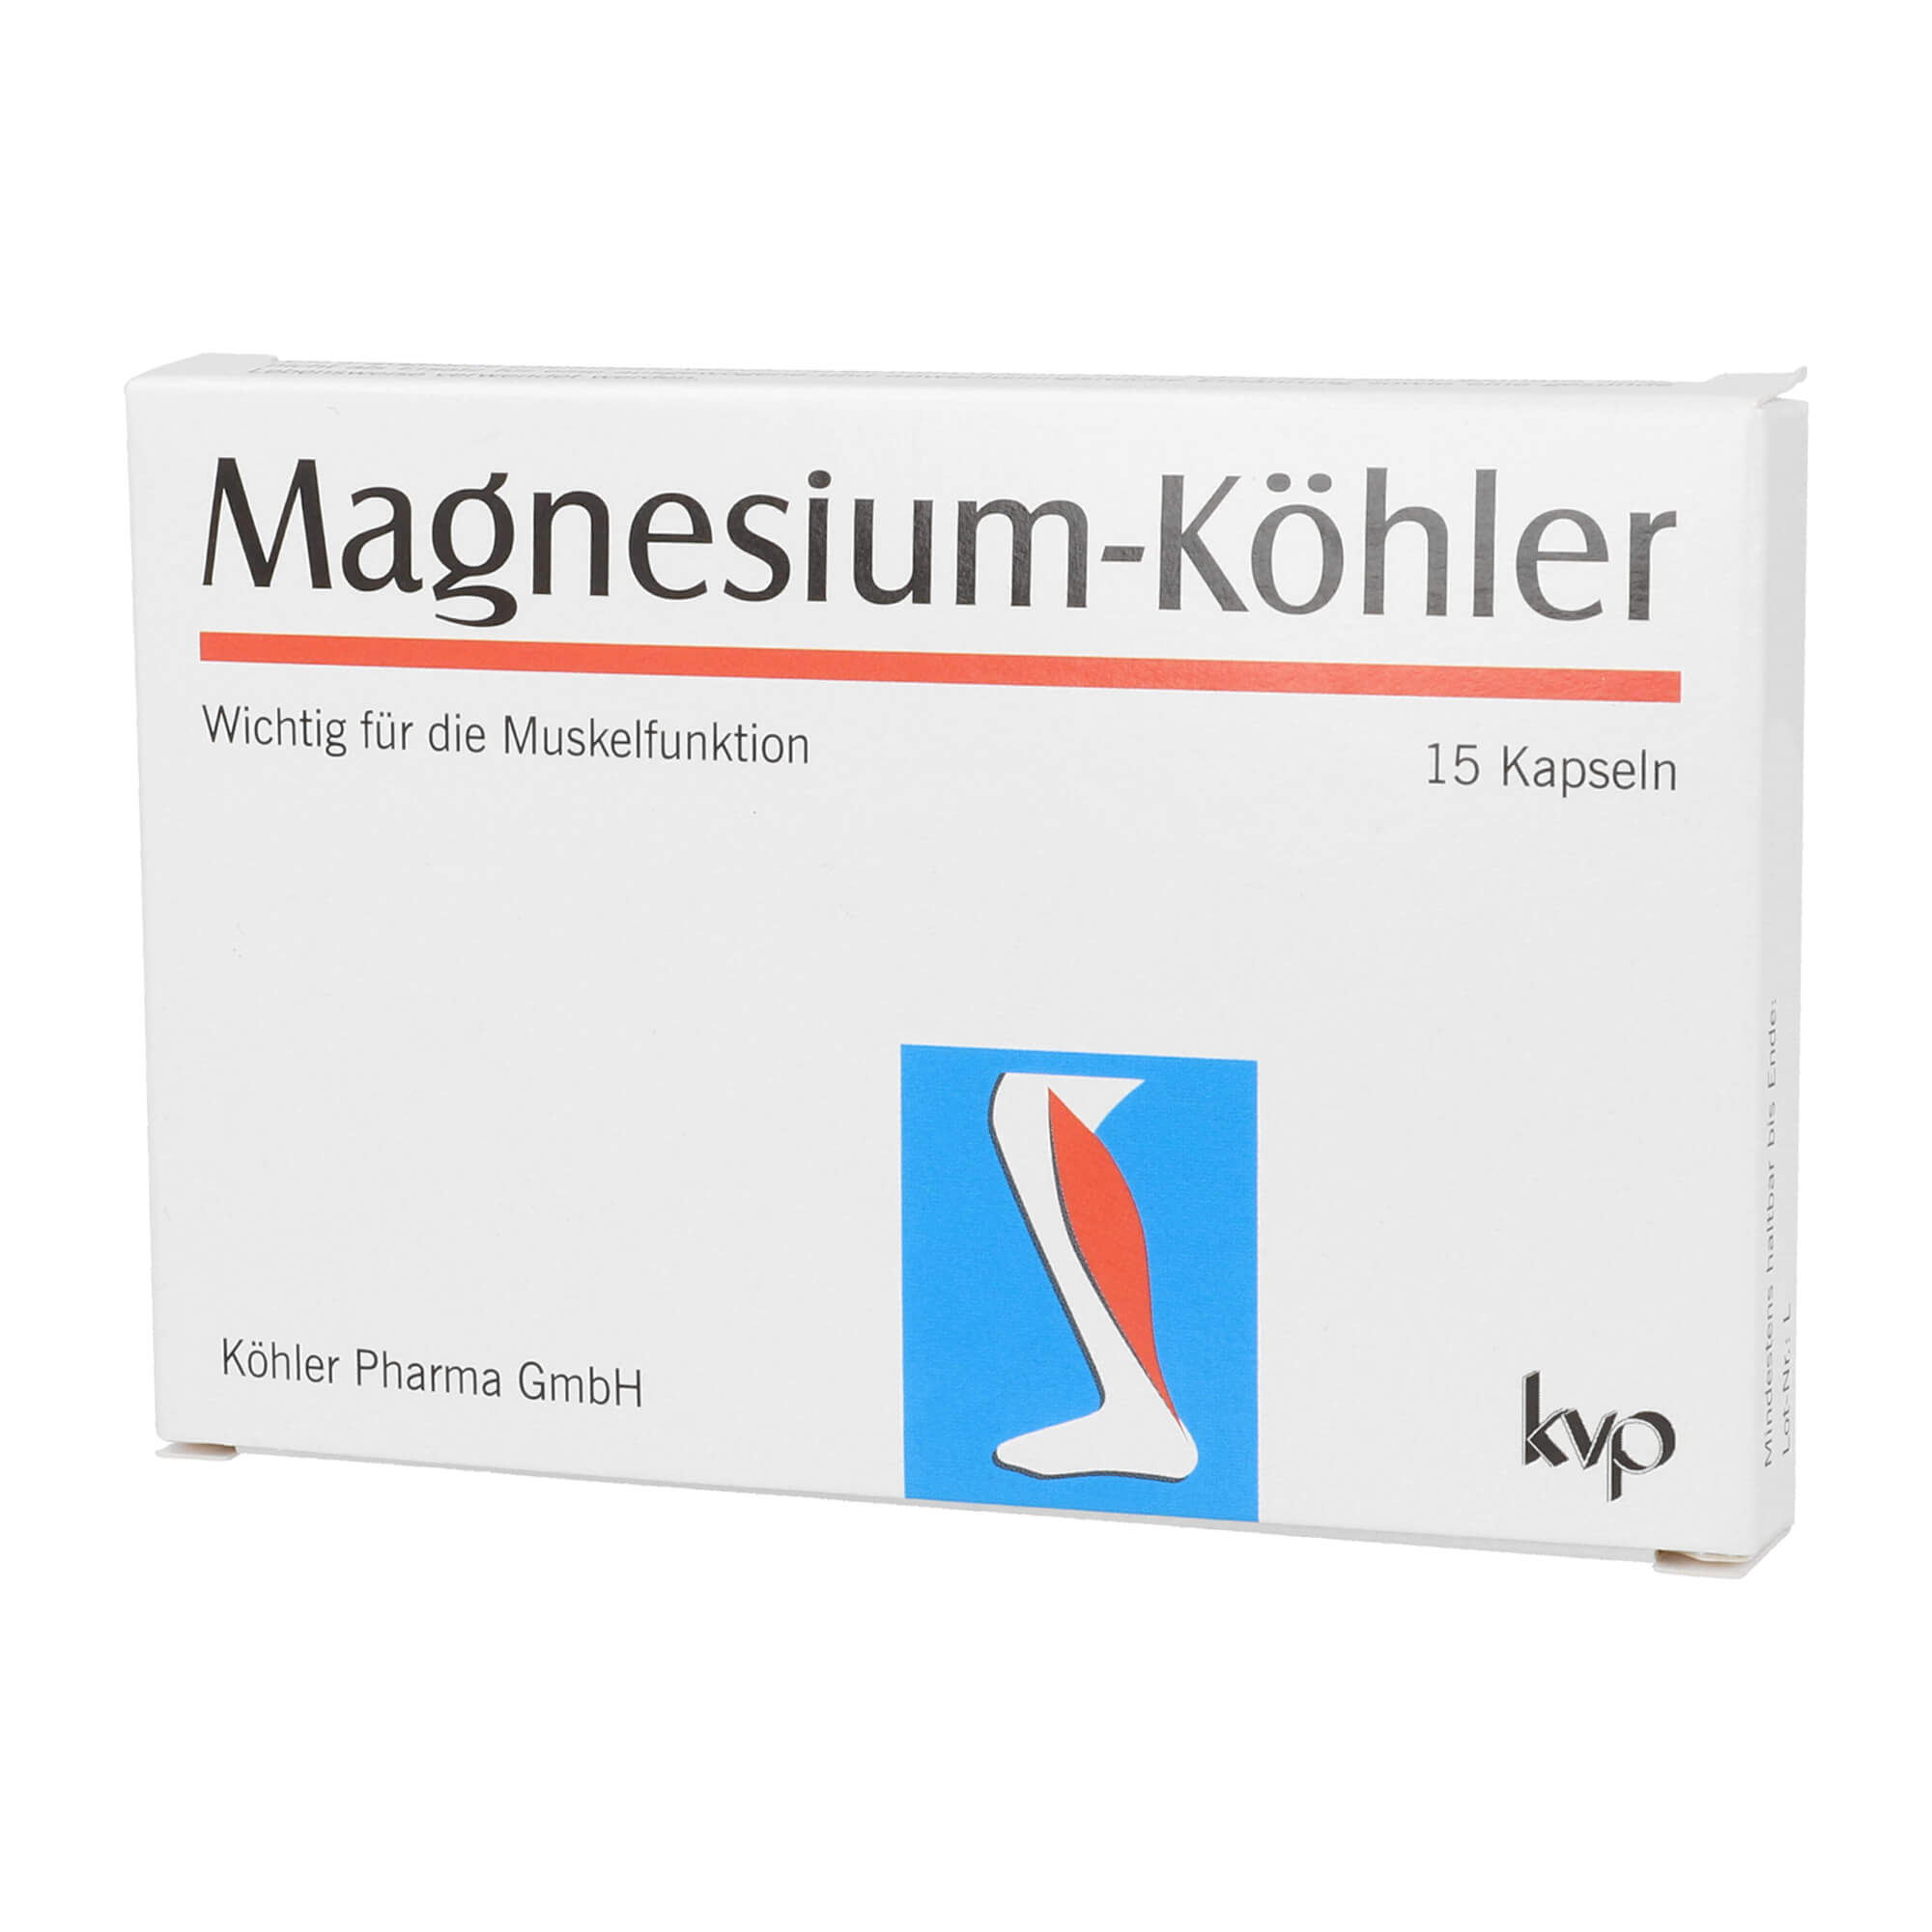 Nahrungsergänzungsmittel mit Magnesium und Vitamin B6.